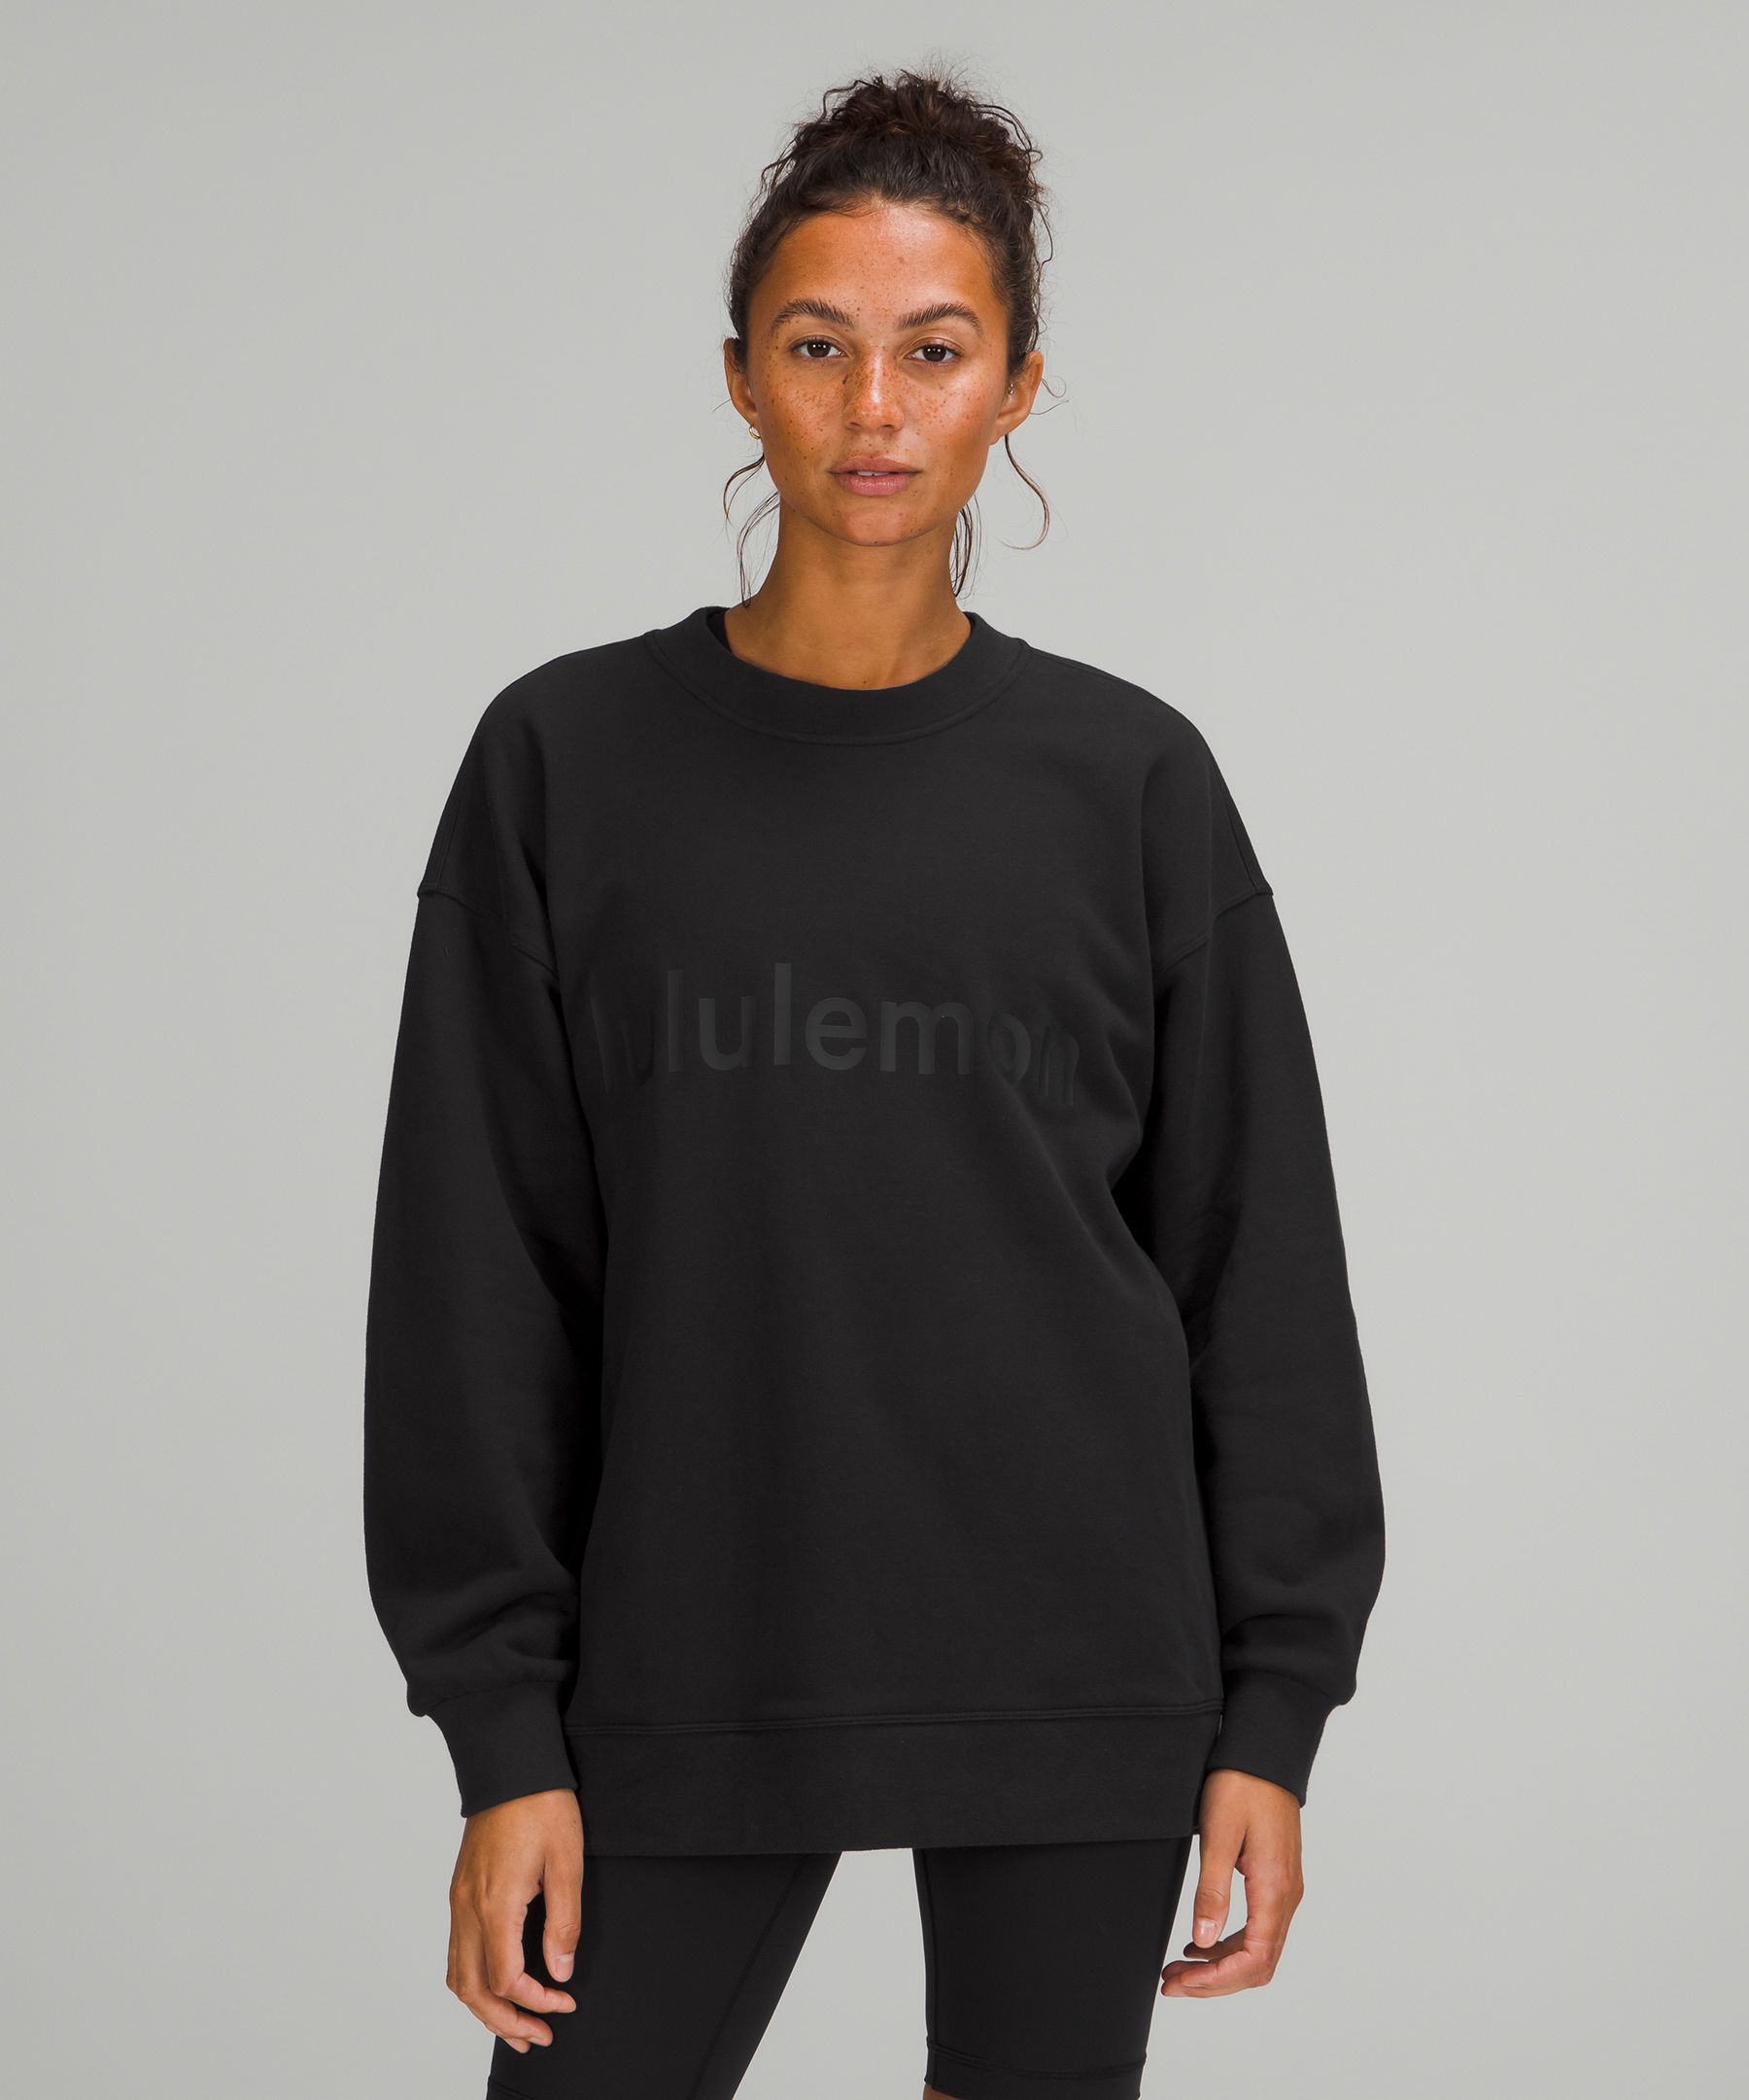 Lululemon Size 12 Perfectly Oversized Crew Sweatshirt Cream Off White Like  New